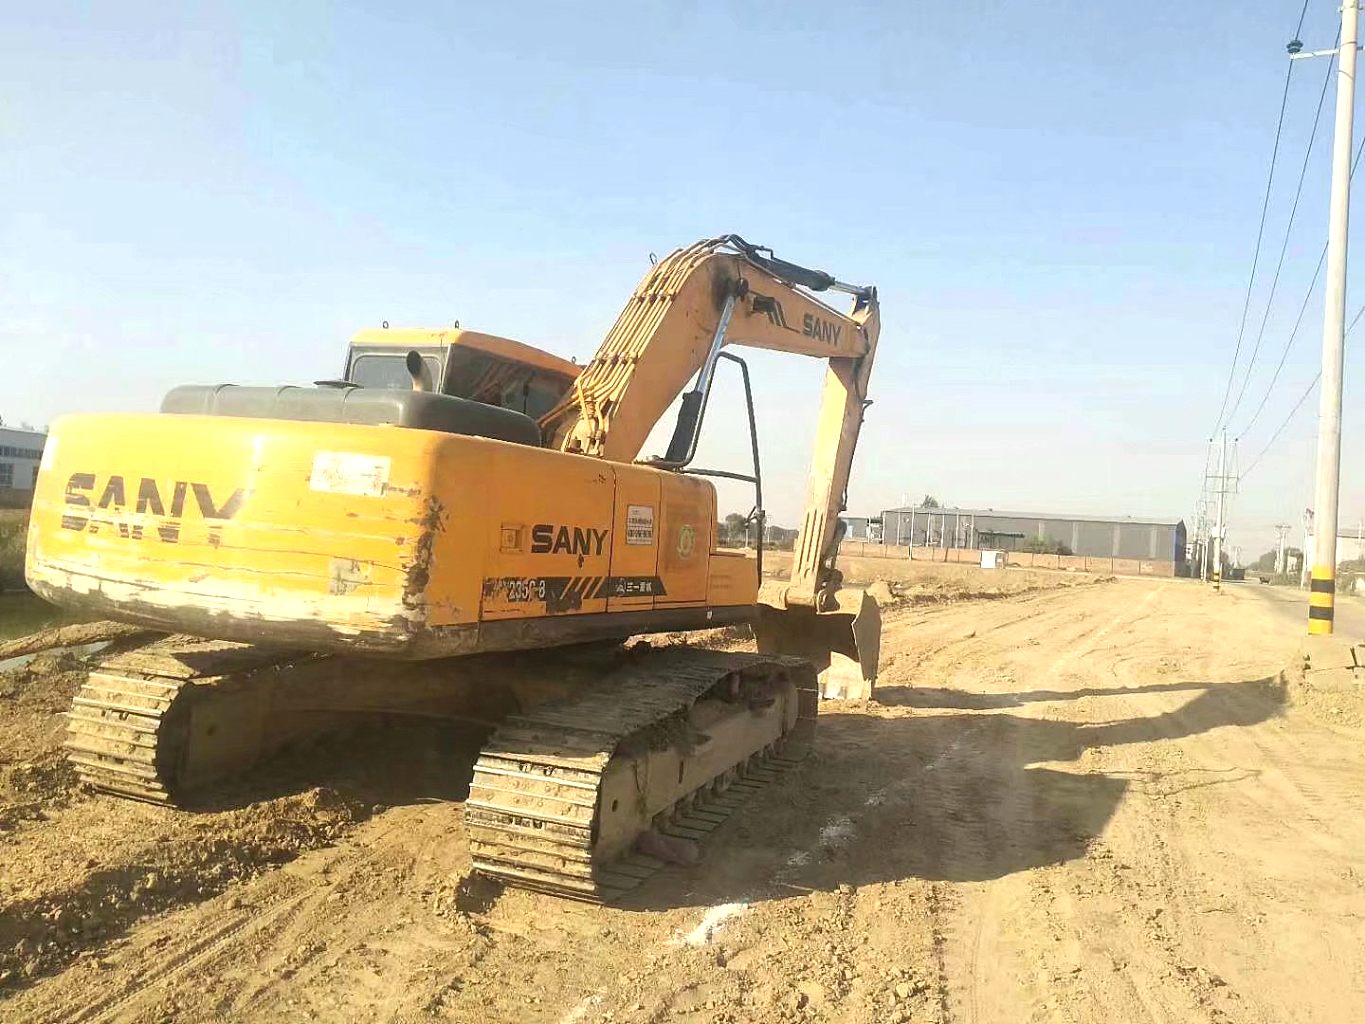 浙江湖州市23万元出售三一重工SY215挖掘机